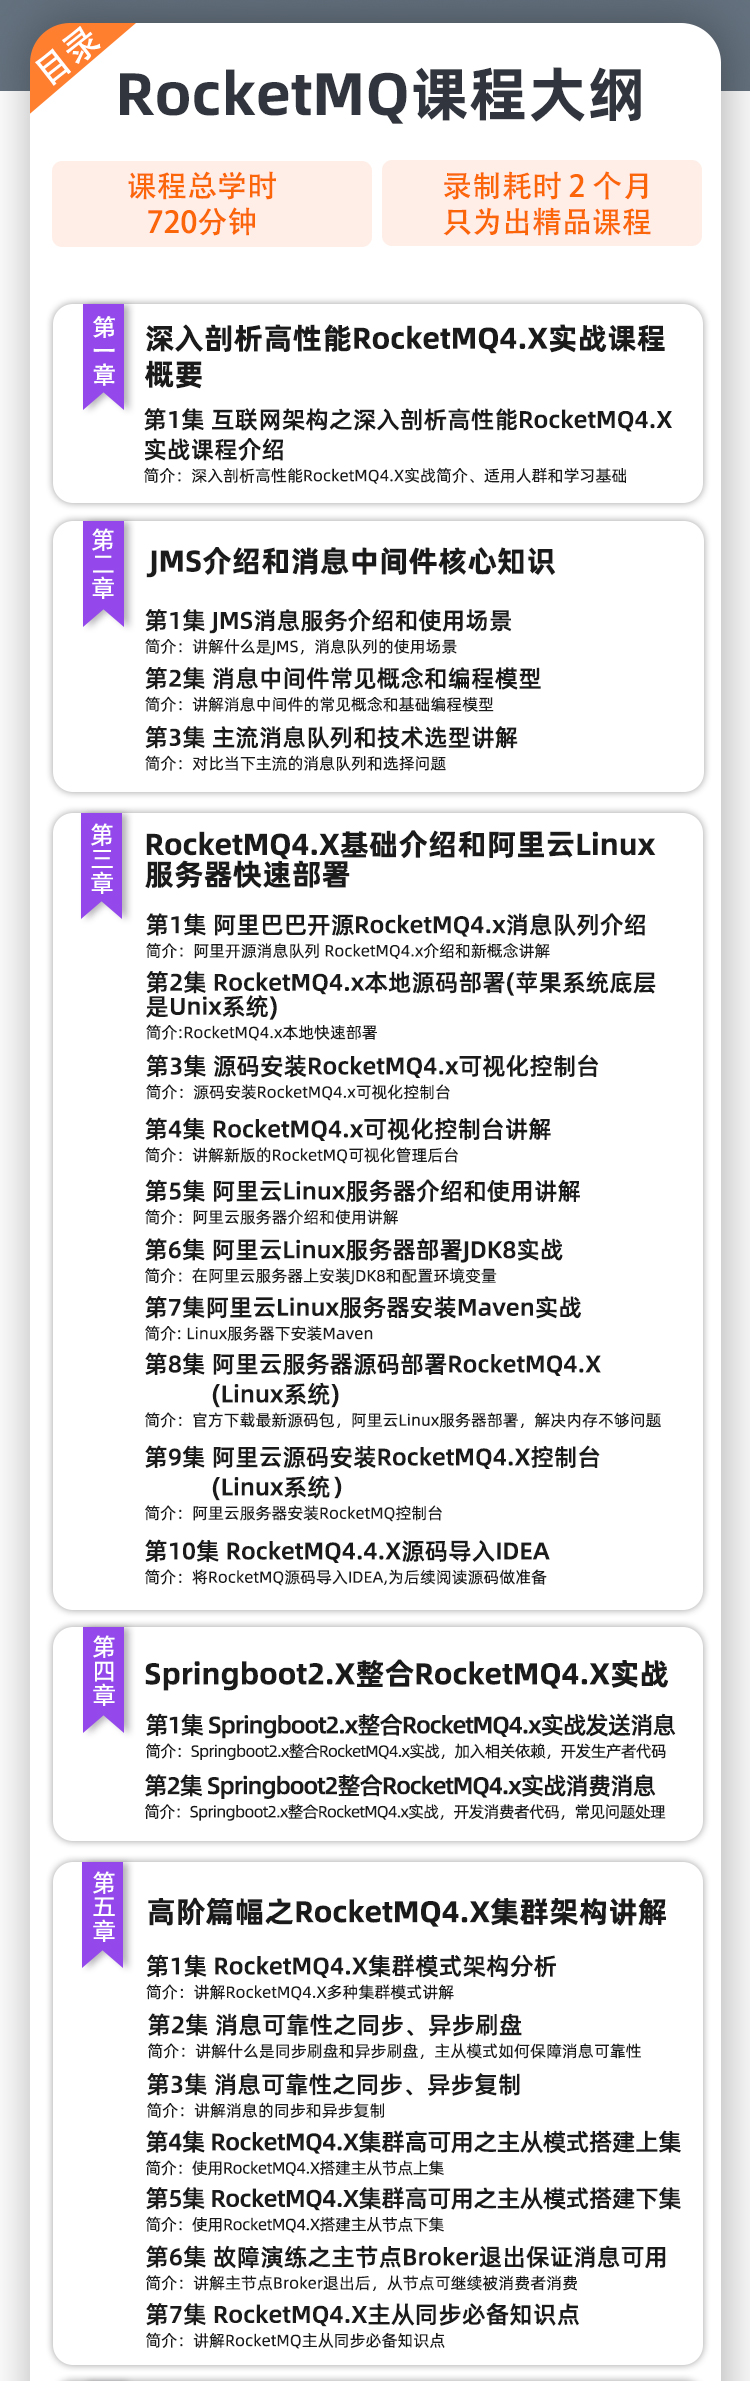 RocketMQ_05.jpg